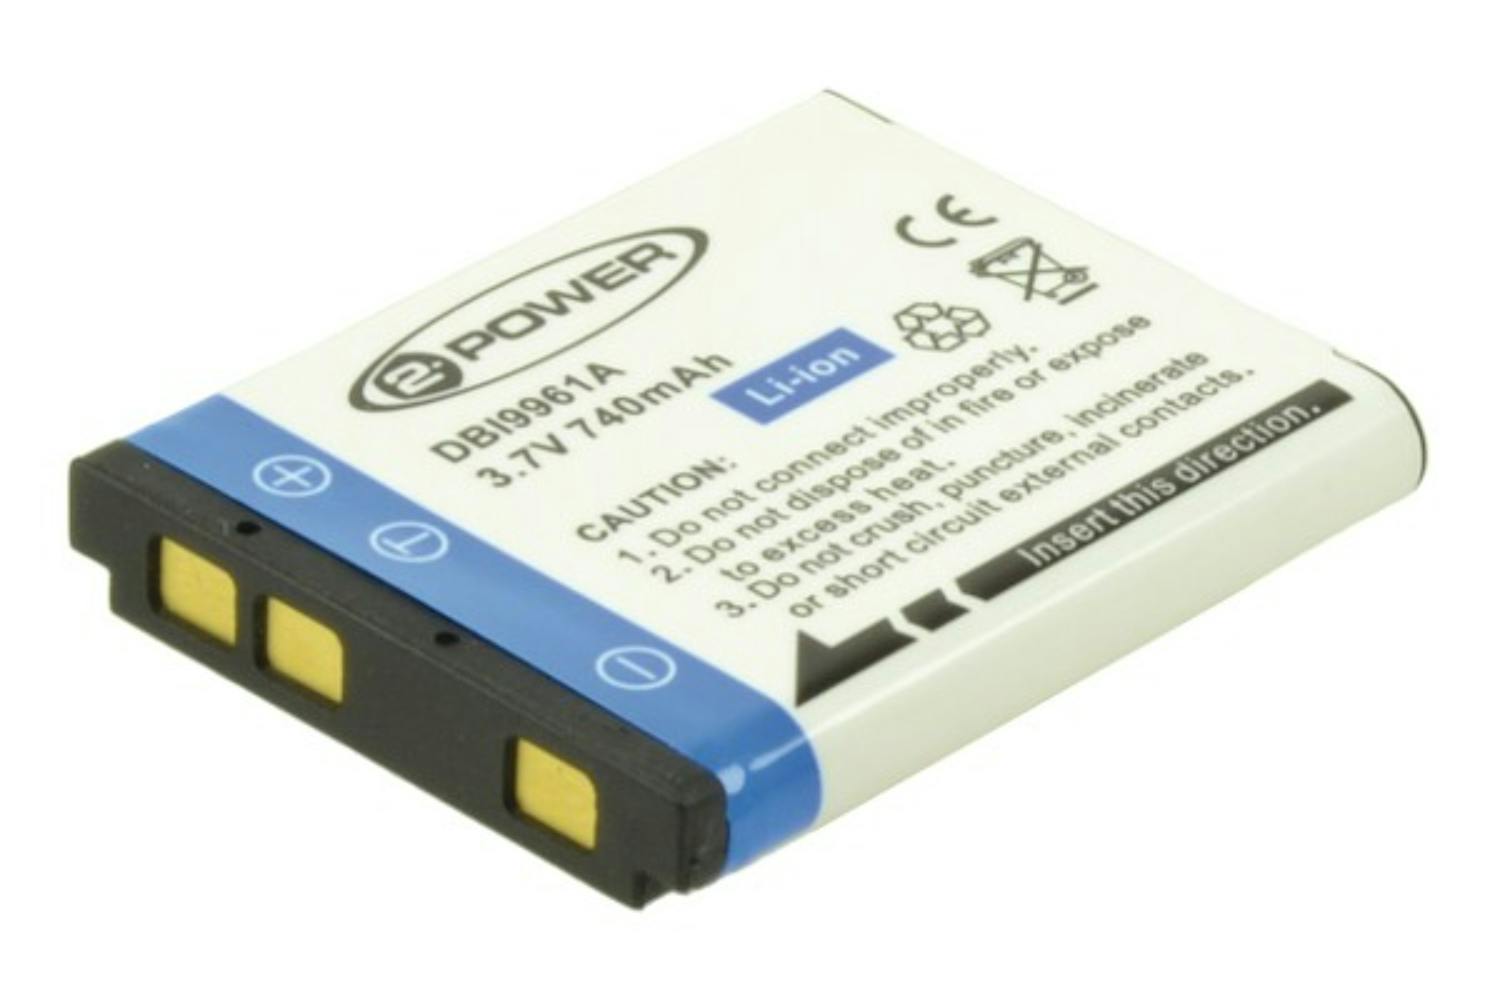 2-Power 600mAh Digital Camera Battery